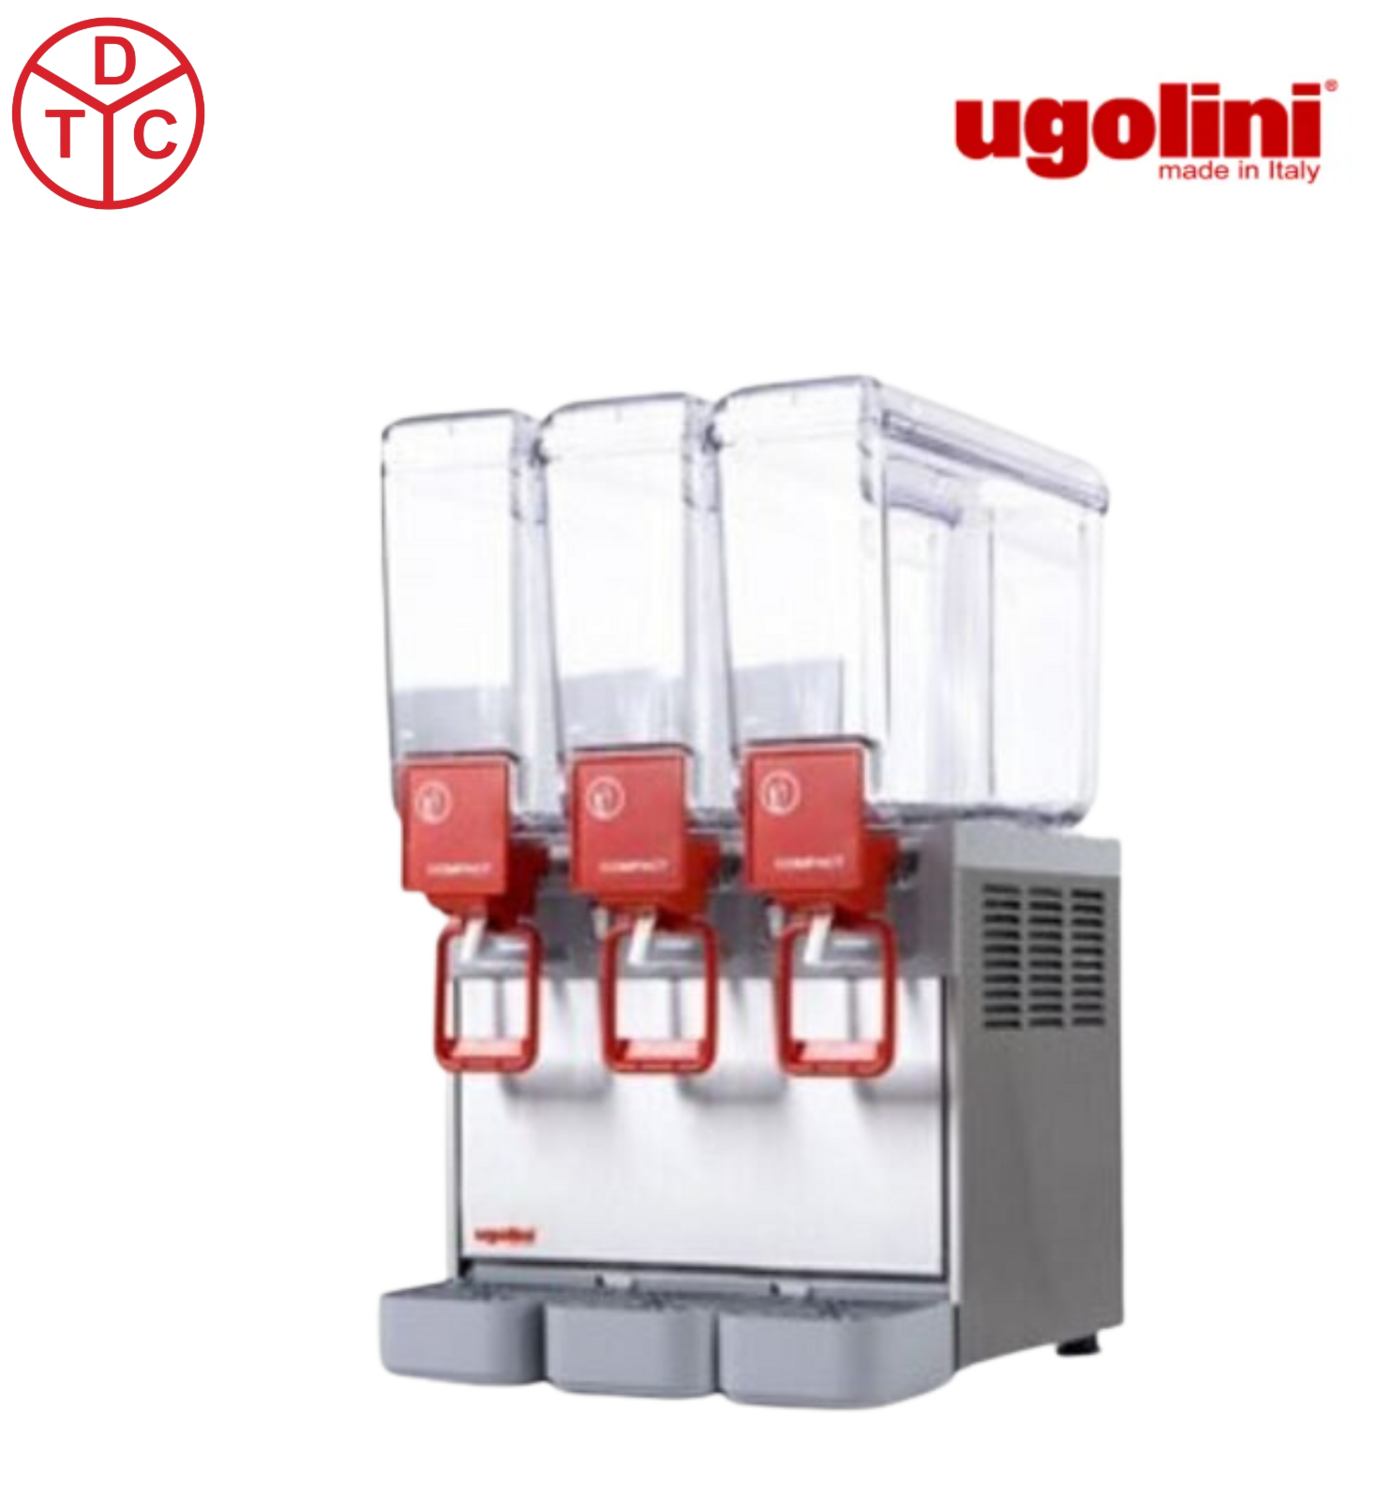 UGOLINI Juice Dispenser 8 / 3 Compact